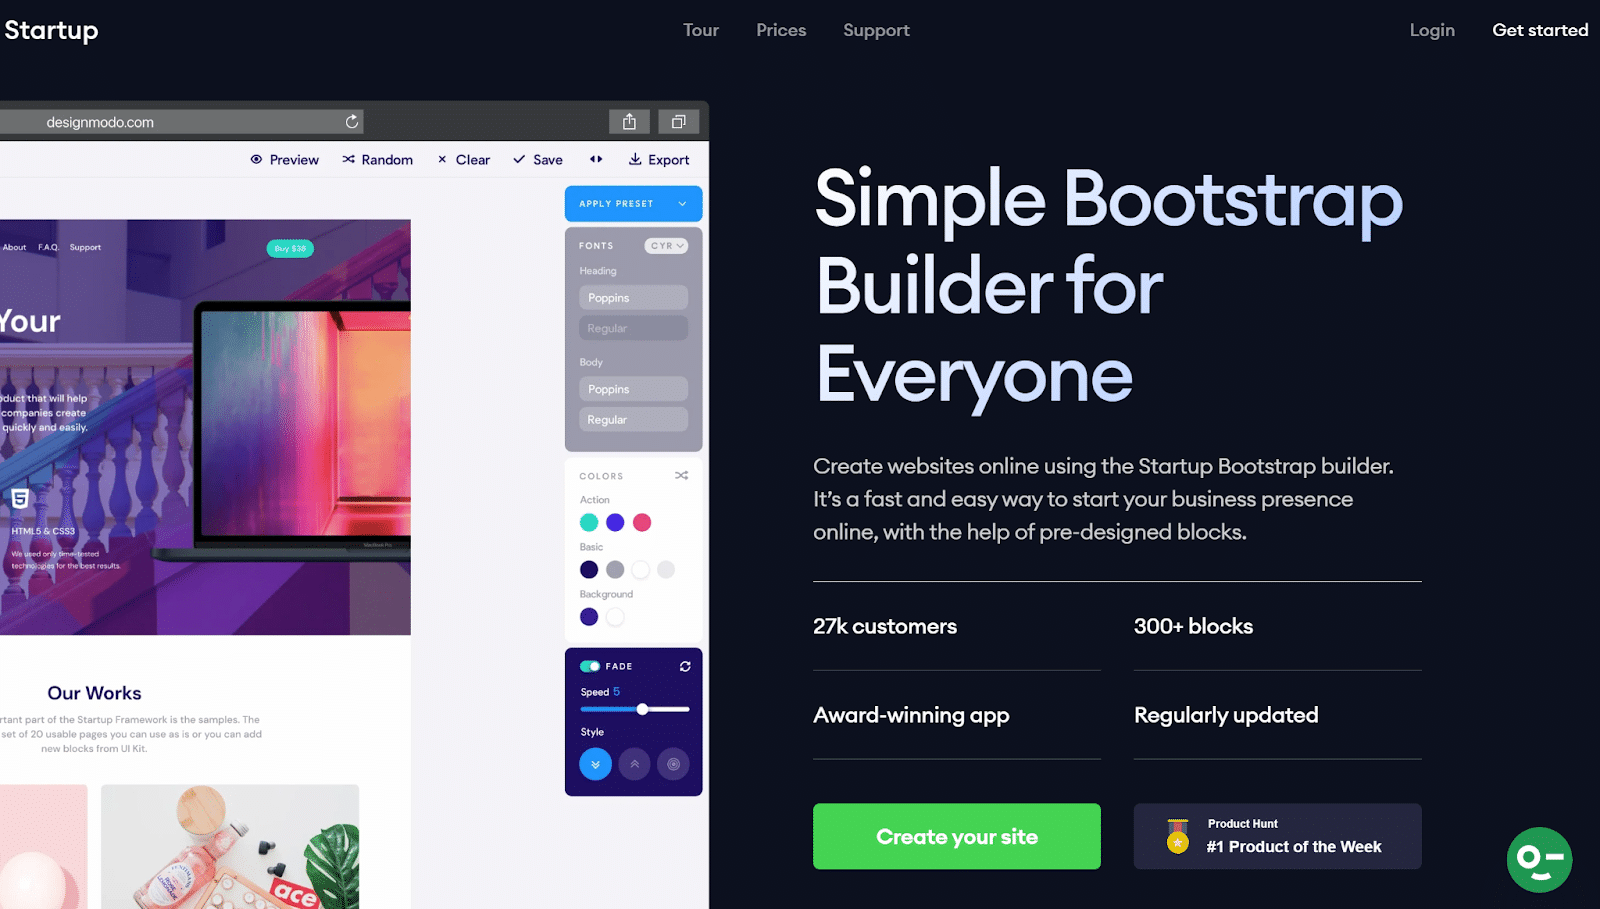 Schermata dell’homepage del software di progettazione Startup 4 che dice Simple Bootstrap Builder for Everyone